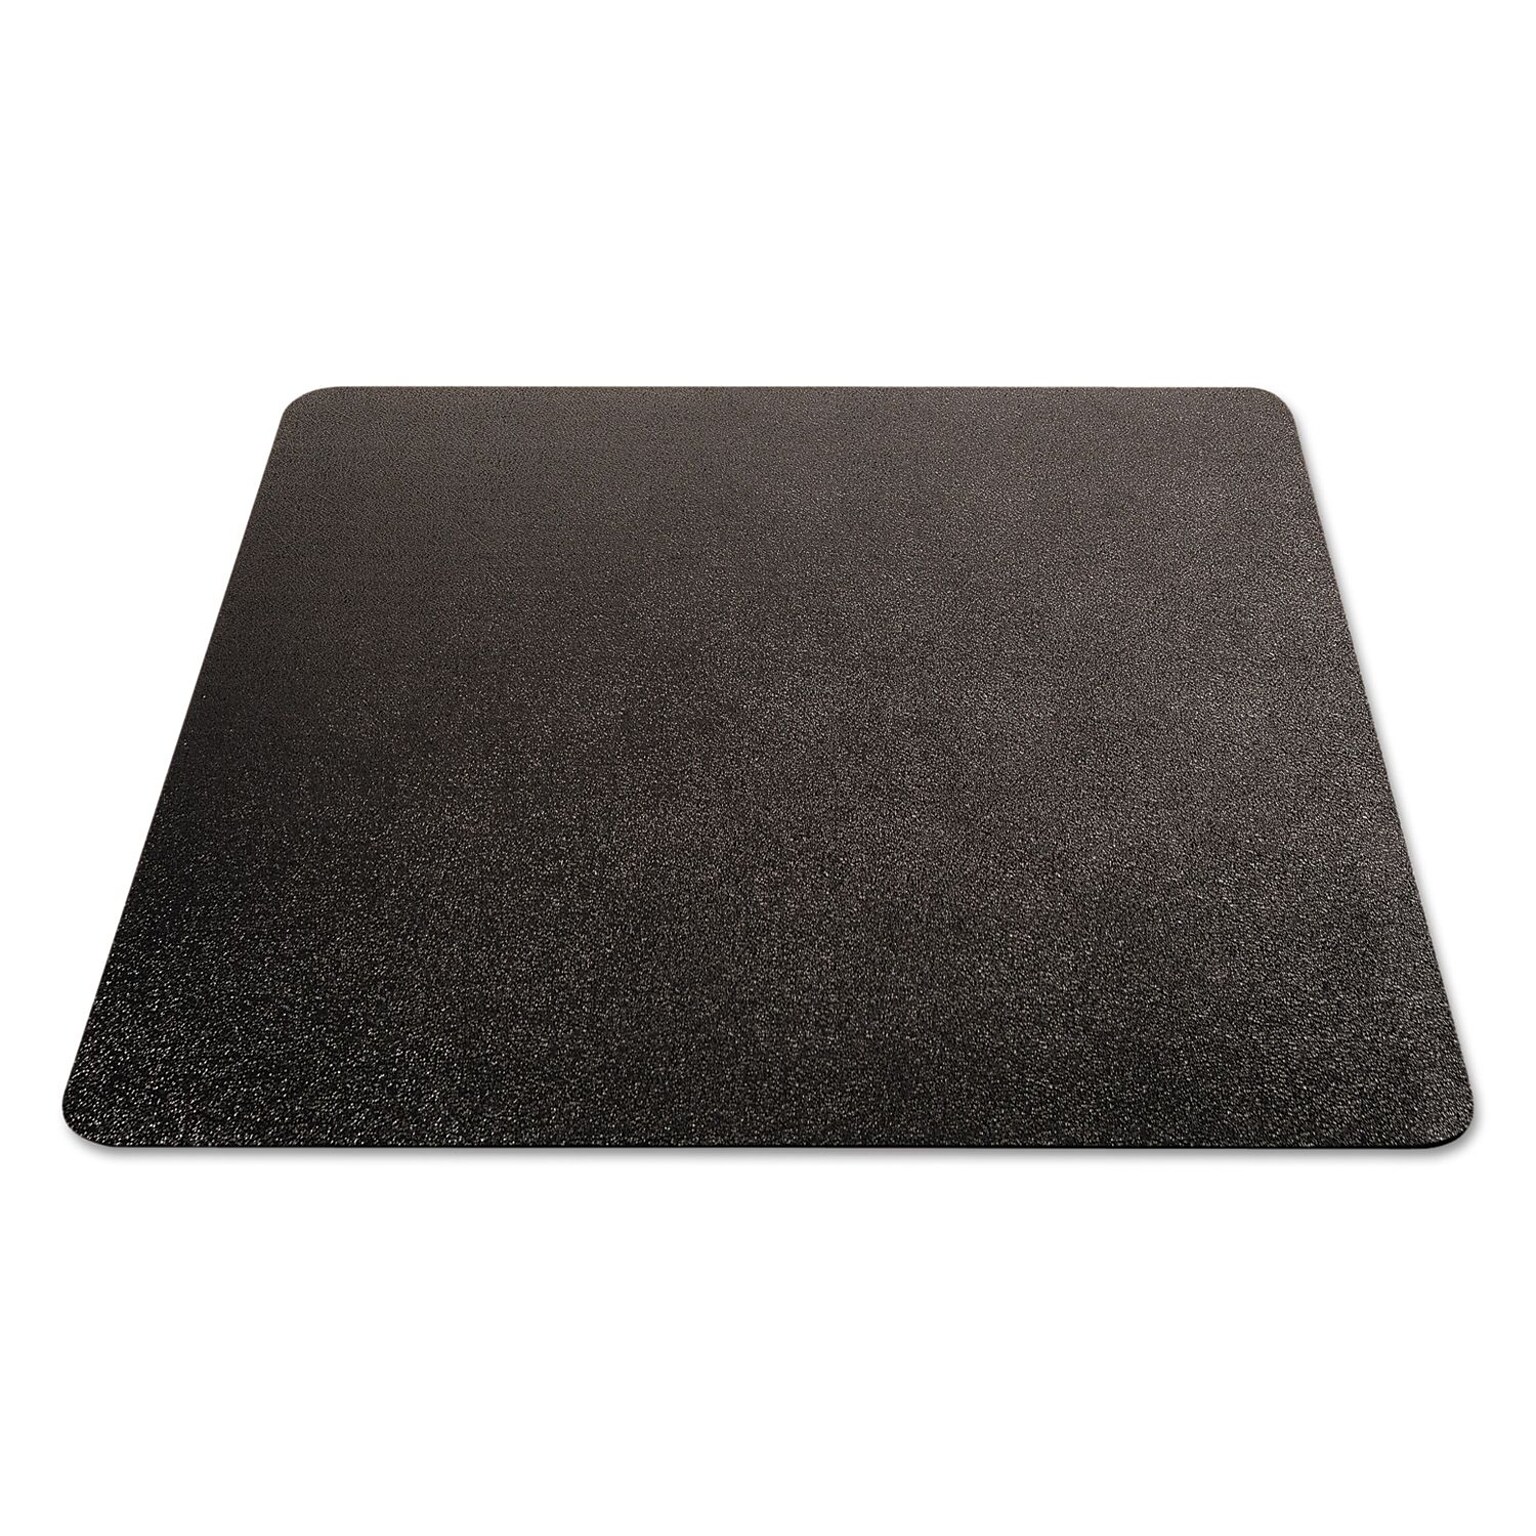 Deflect-O EconoMat Carpet Chair Mat, 46 x 60, Low-Pile, Black (DEFCM11442FBLK)